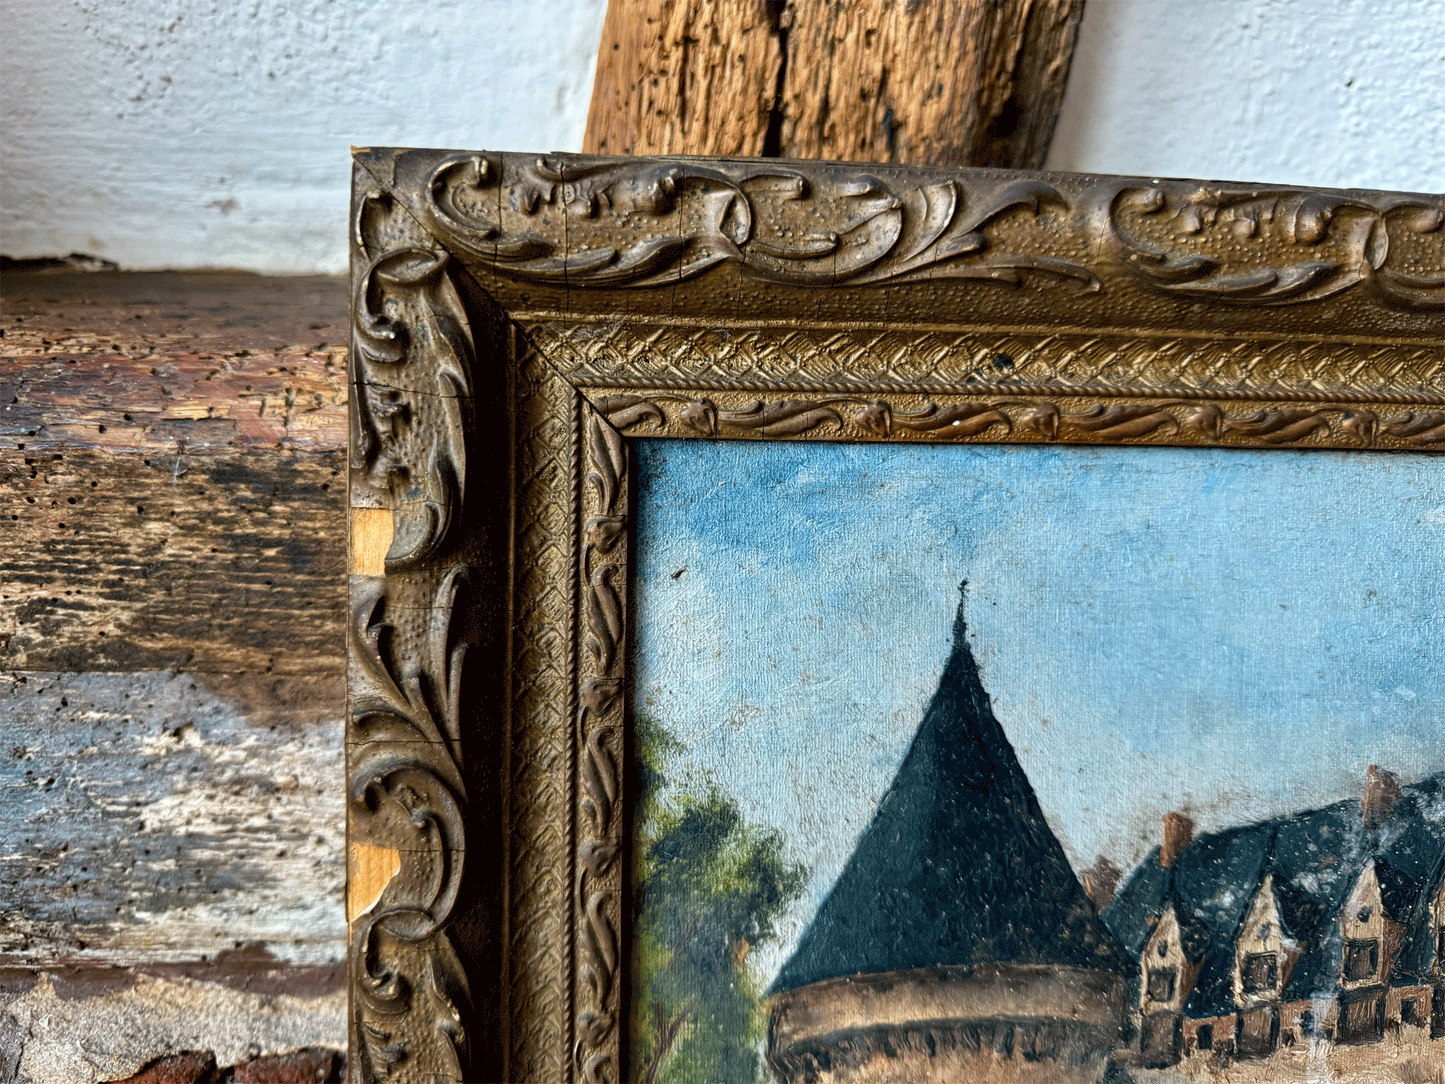 antique frencg oil painting canvas chateau scene m desbourdes